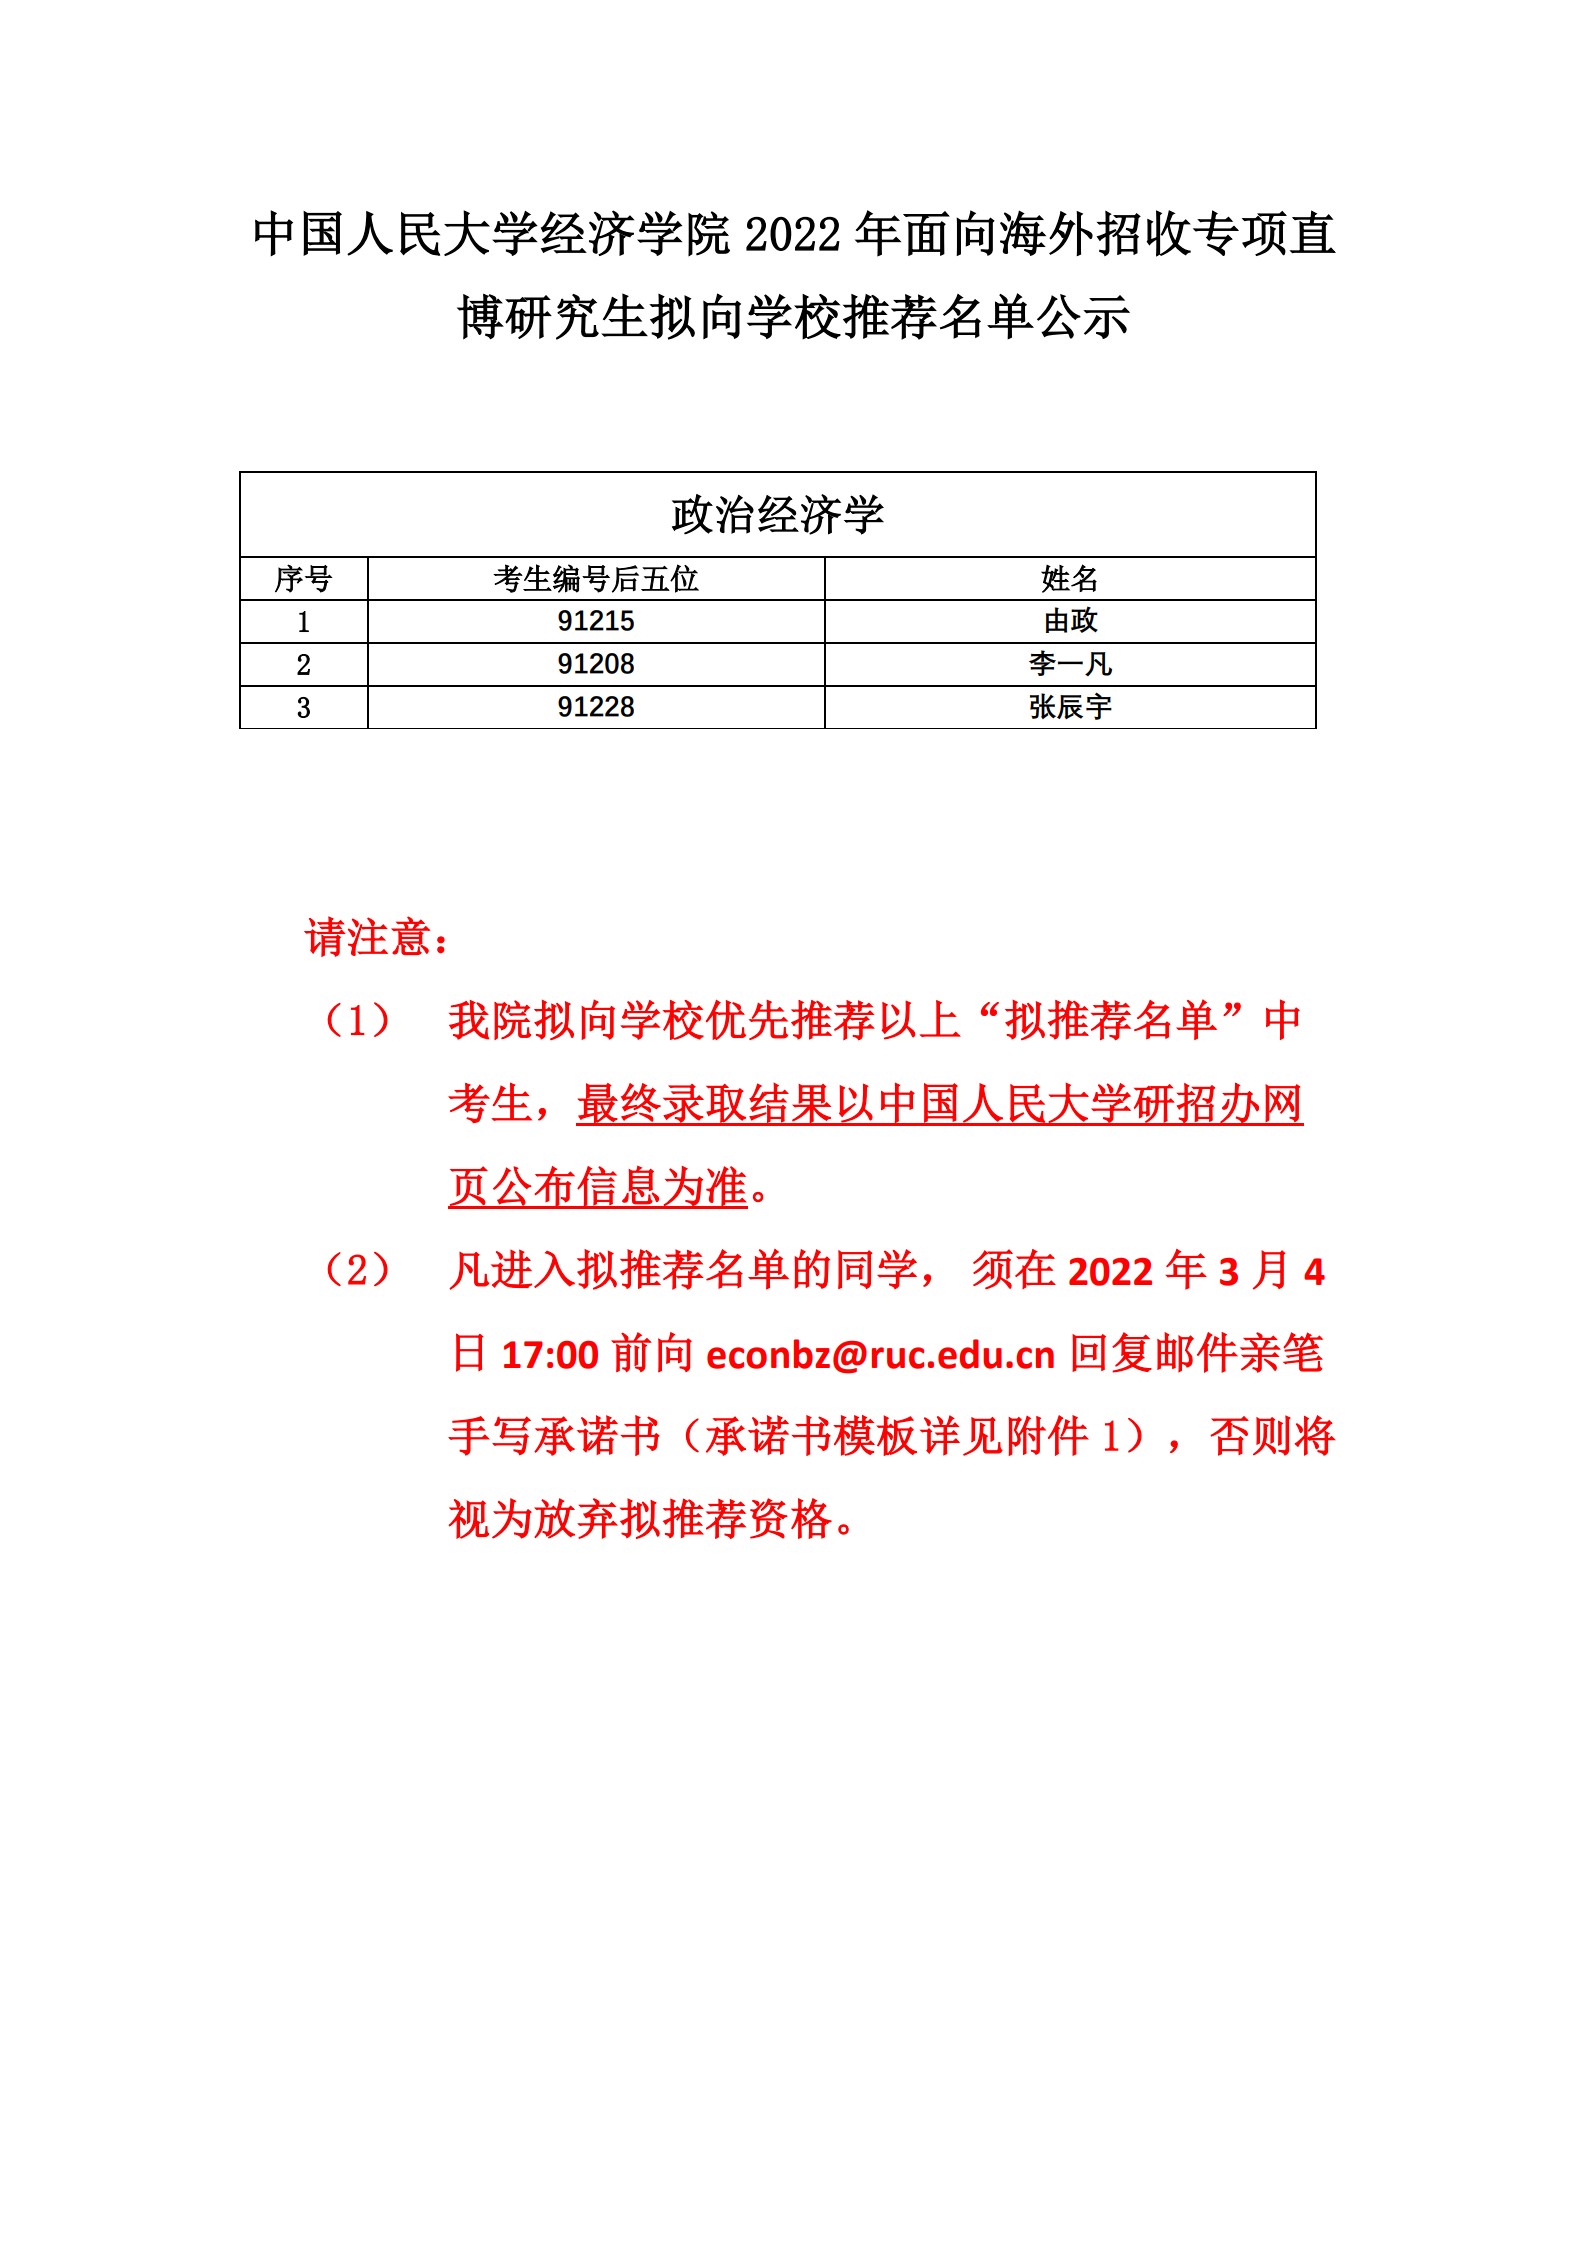 中国人民大学经济学院2022年面向海外招收专项直博研究生推荐名单公示_1.jpg